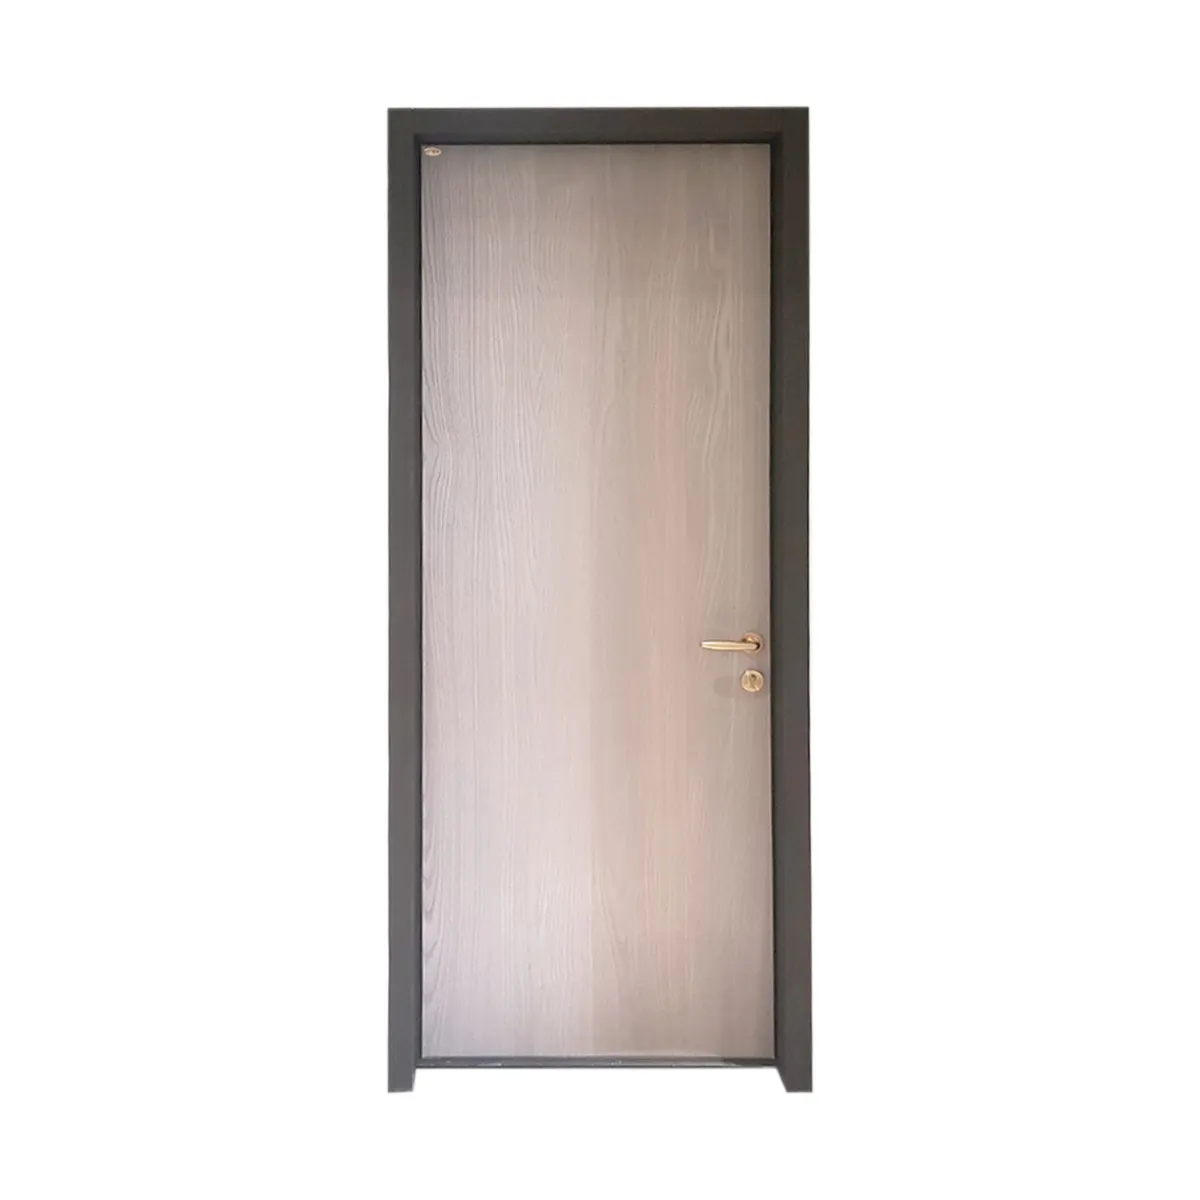 Taiwan Brand The Best Quality Custom Soundproof Door Office Bedroom Soundproof Steel Door